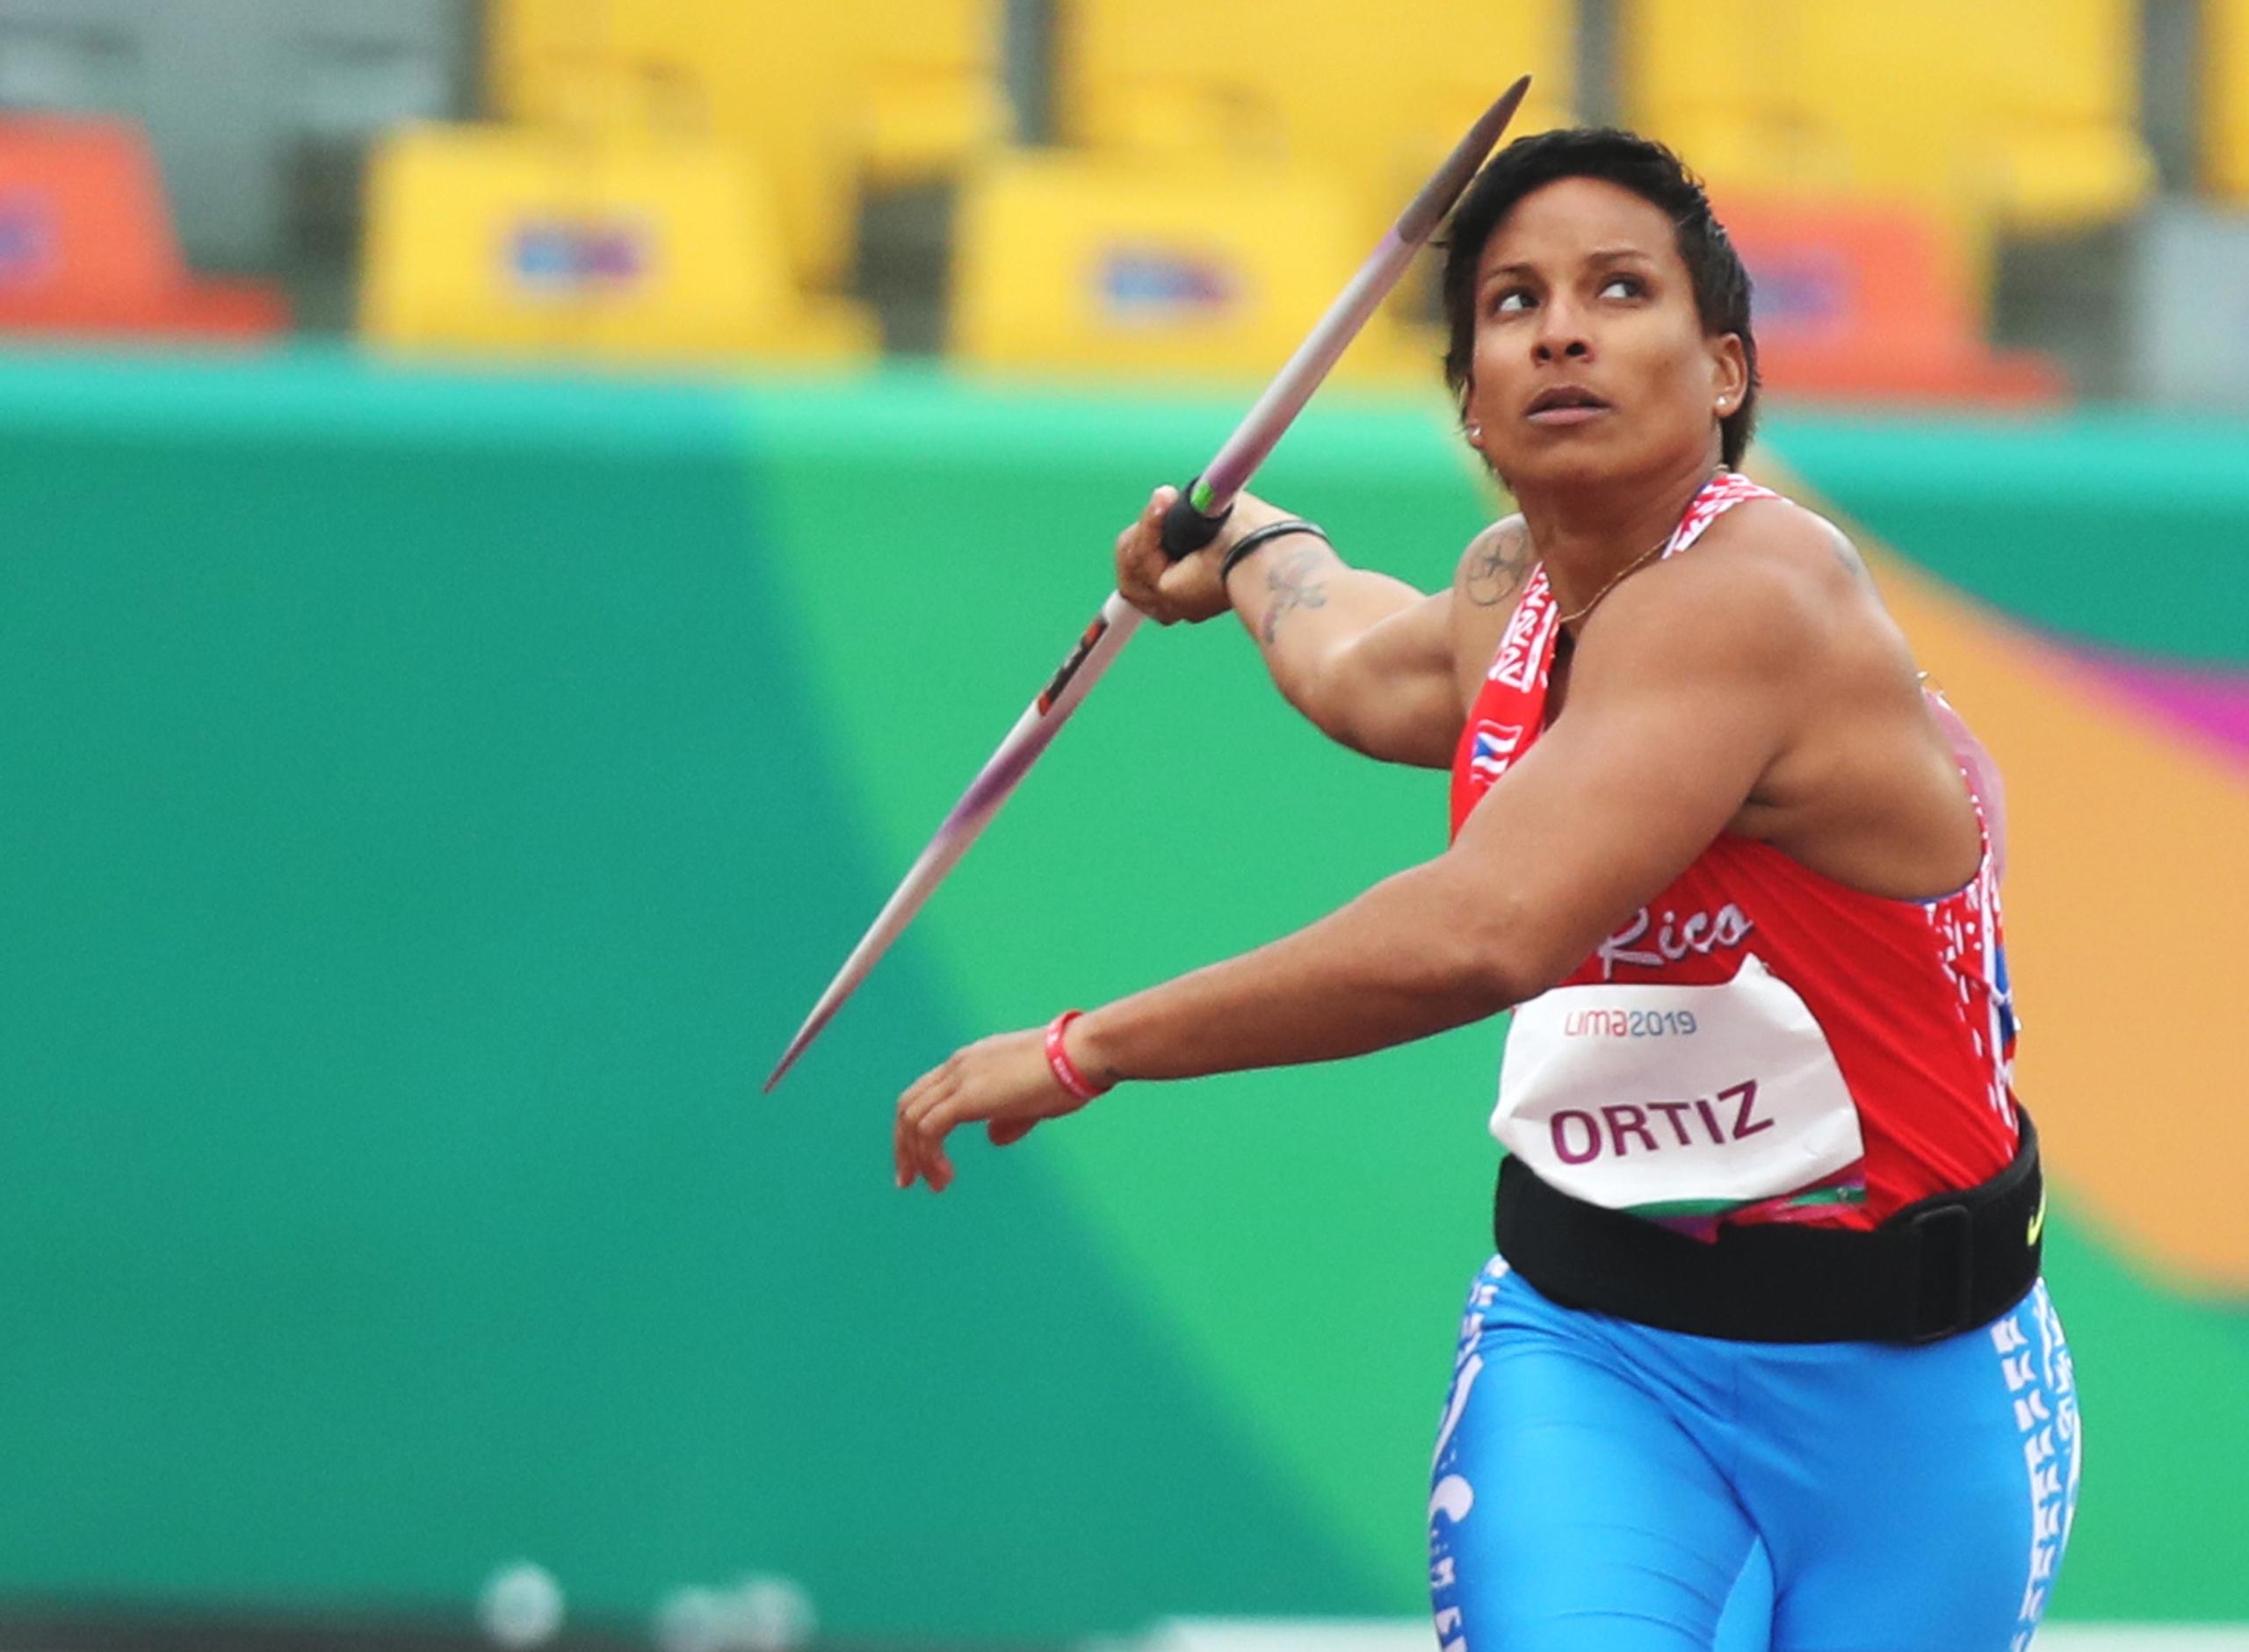 La marca nacional de Coraly Ortiz Nieves es de 60.37 metros, lograda en Gurabo el 27 de febrero de 2016.